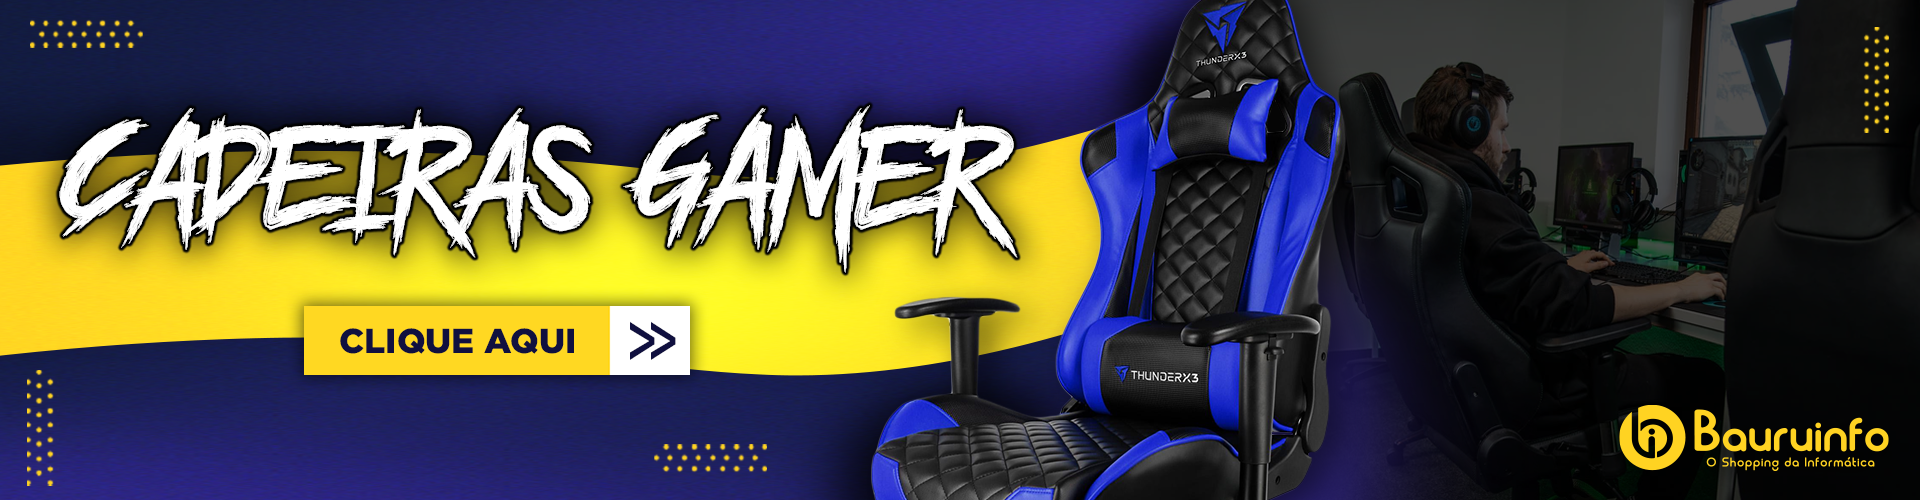 Banner Cadeiras gamers (web)